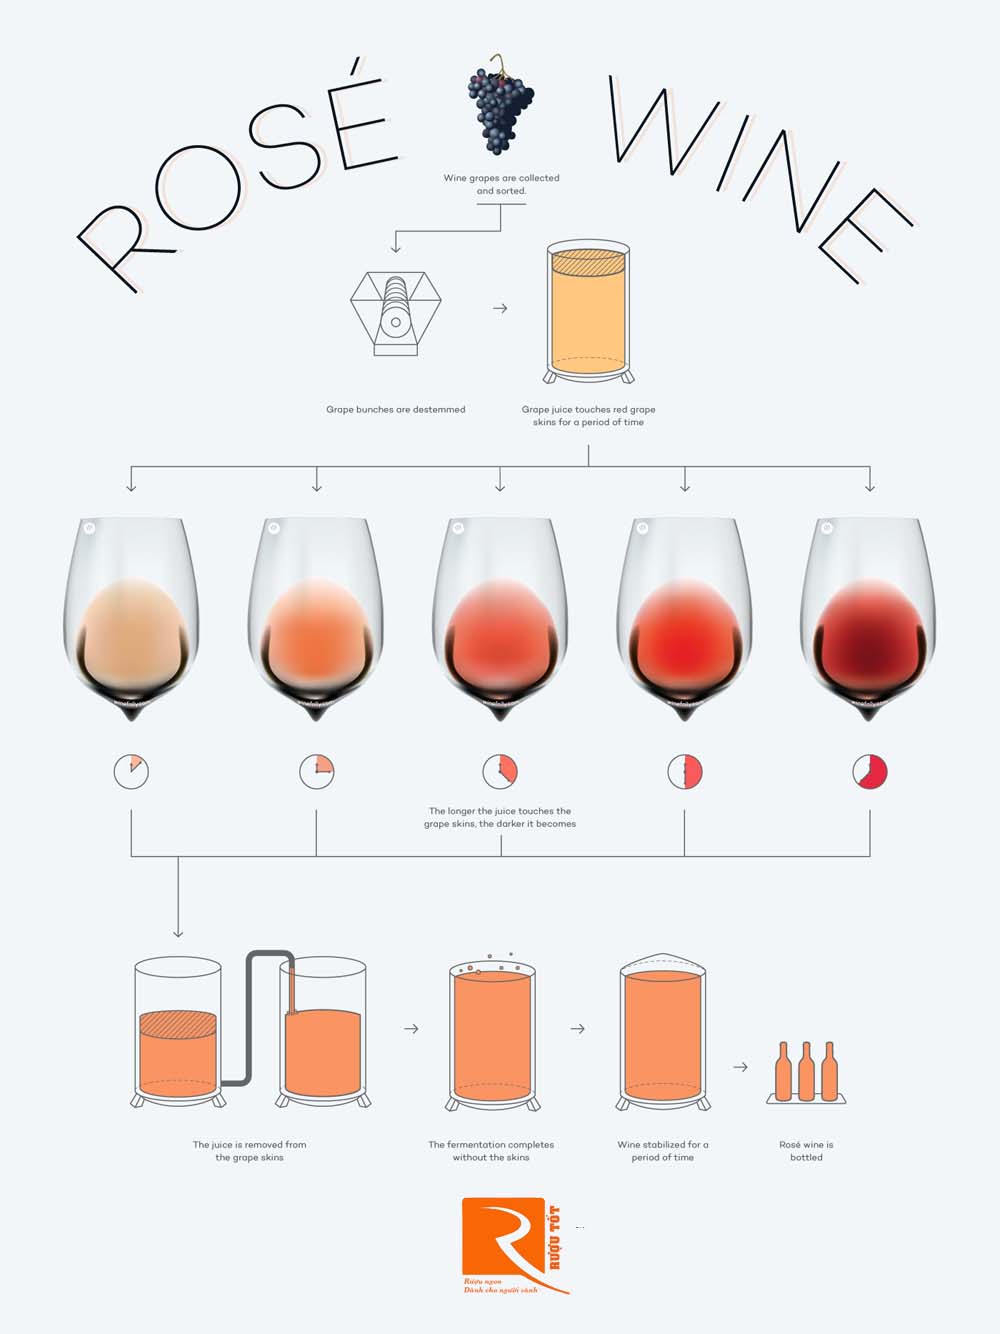 Rượu vang Hồng là gì? Bí mật về rượu vang hồng mà bạn nên biết